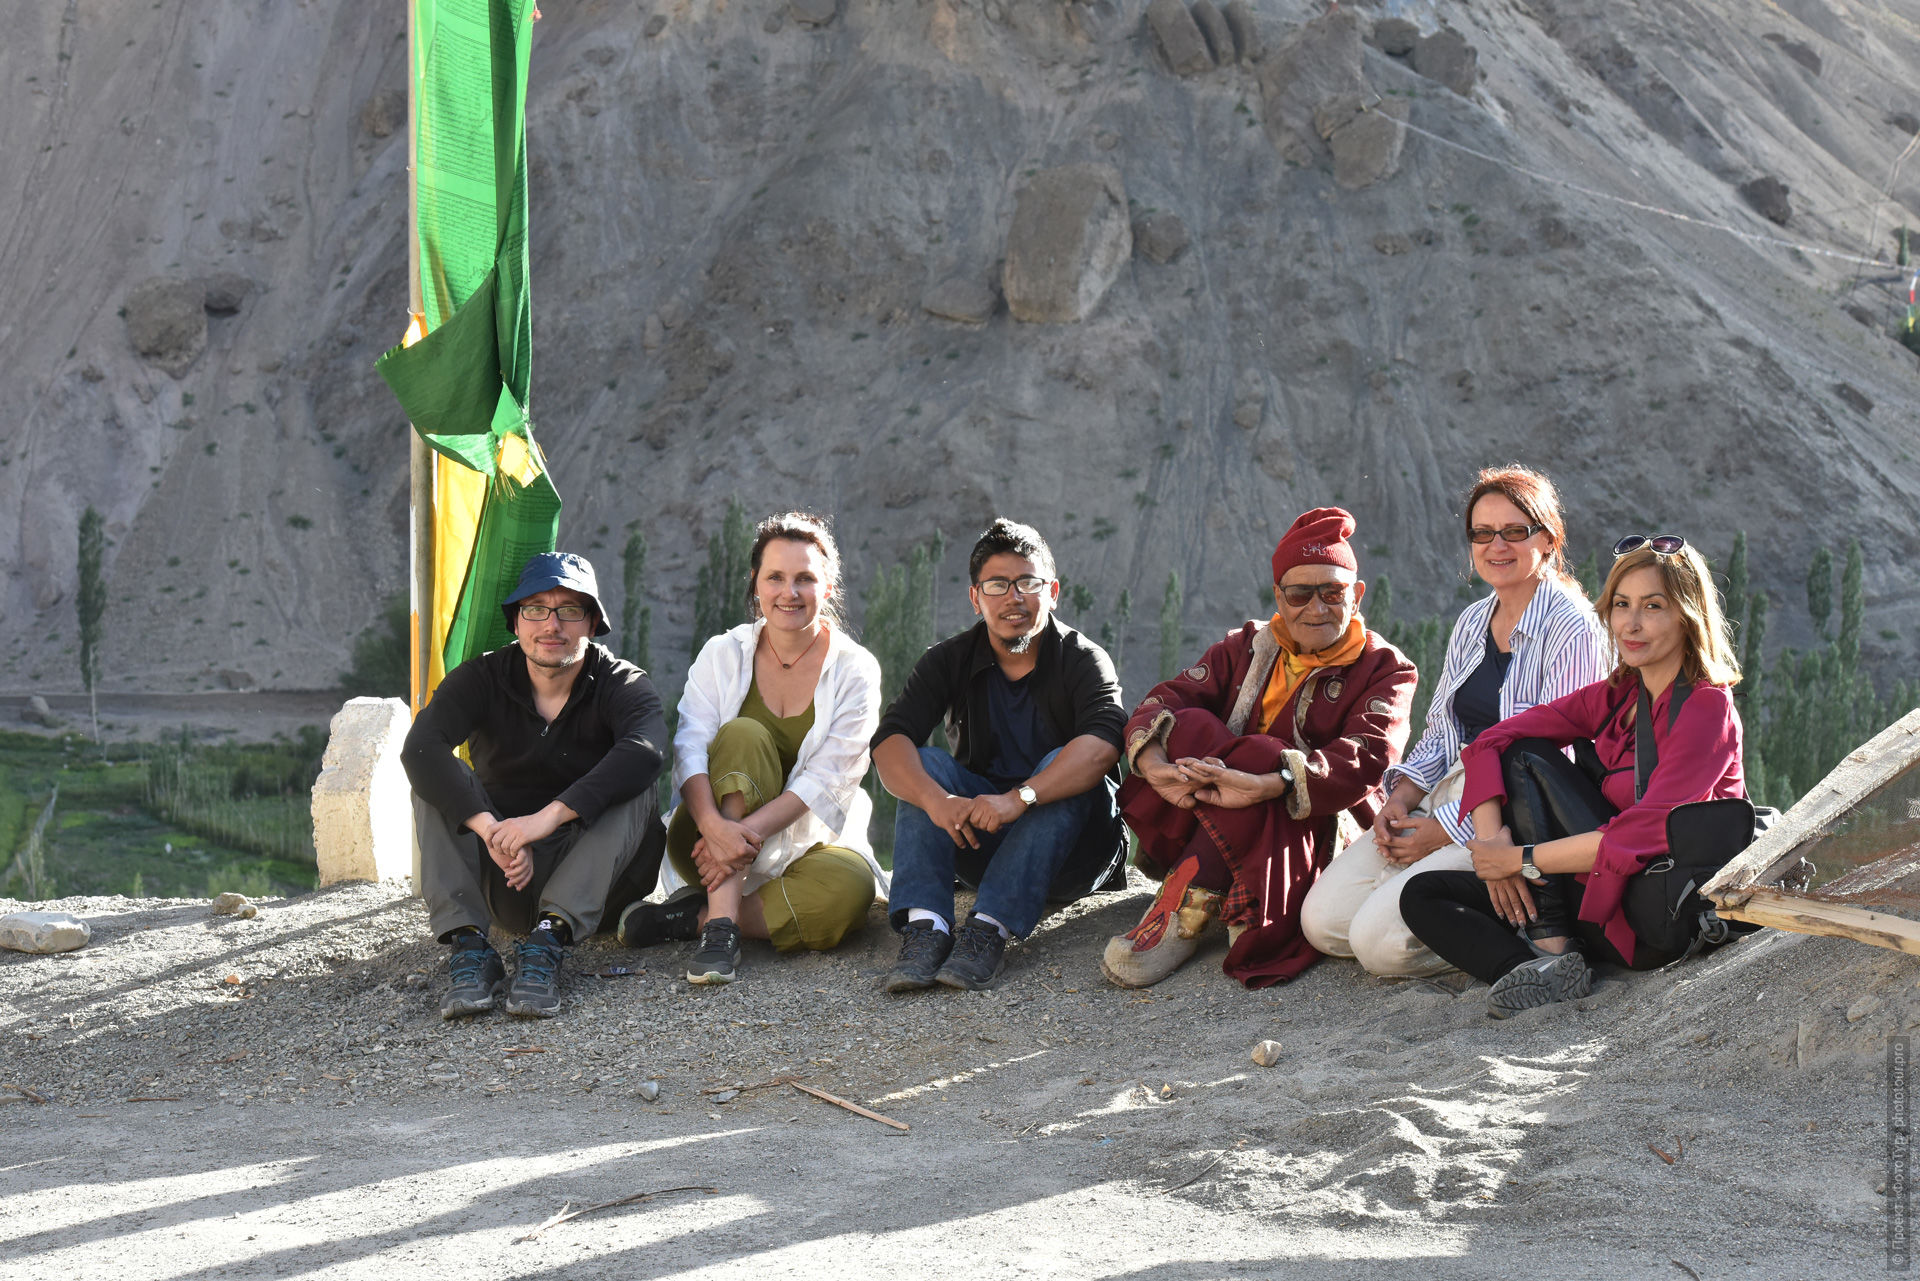 Фототур по Ладакху Тибет Озерный-1, июль 2019 года.